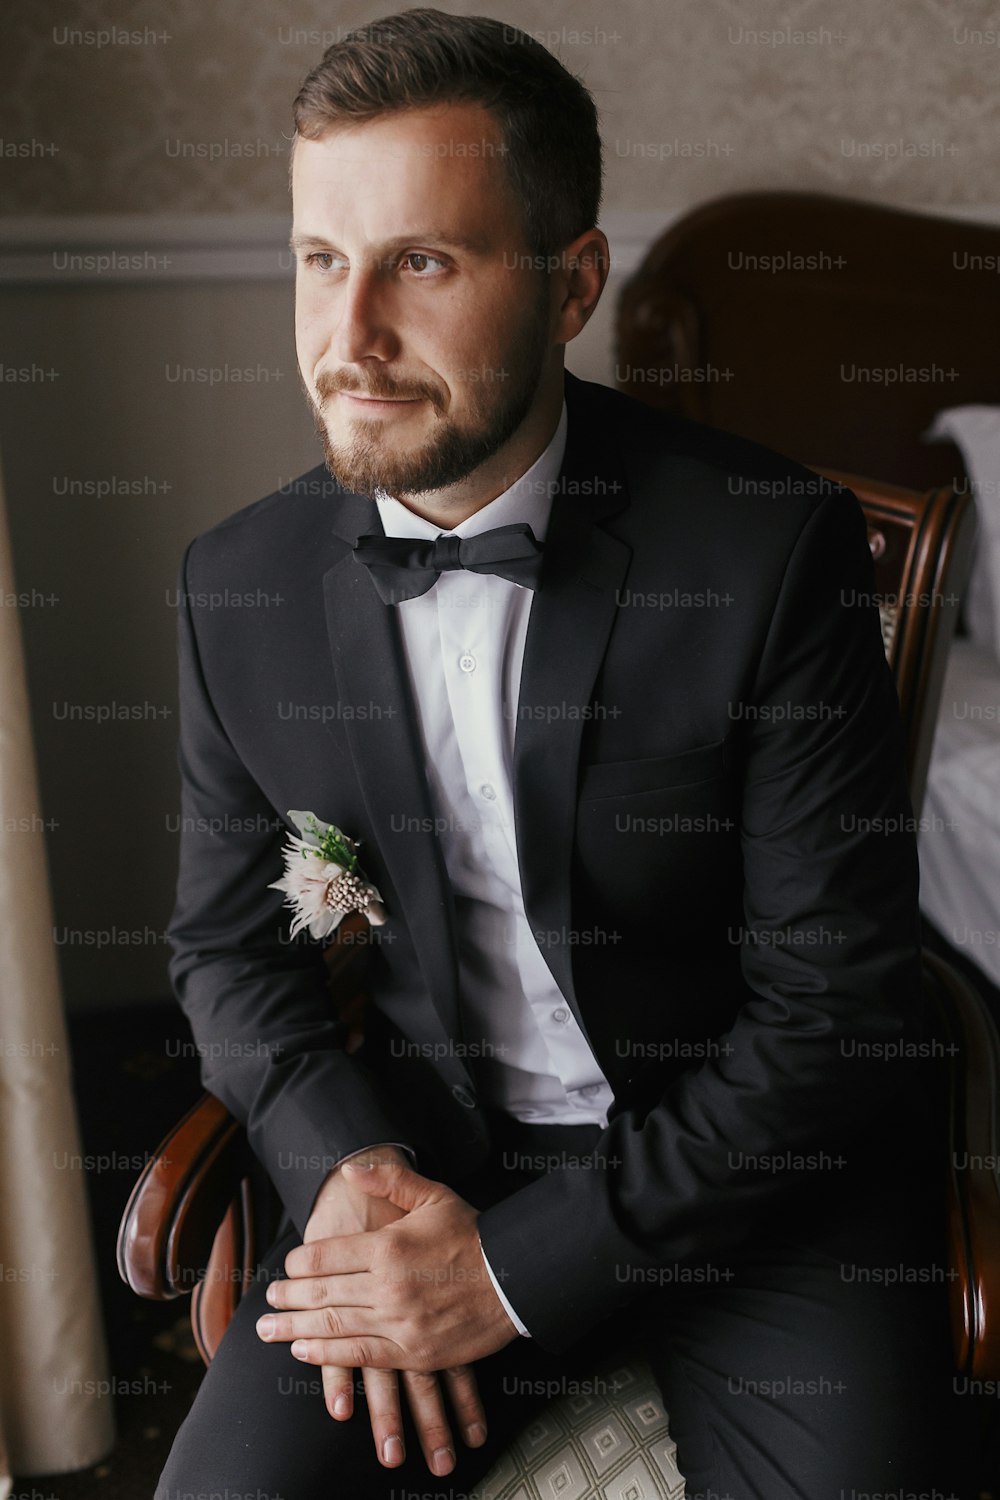 Stilvoller Bräutigam in schwarzem Anzug und Fliege, sitzt im Stuhl bei Fensterlicht. Selbstbewusstes und fröhliches Porträt des Menschen. Bräutigam bereitet sich morgens vor